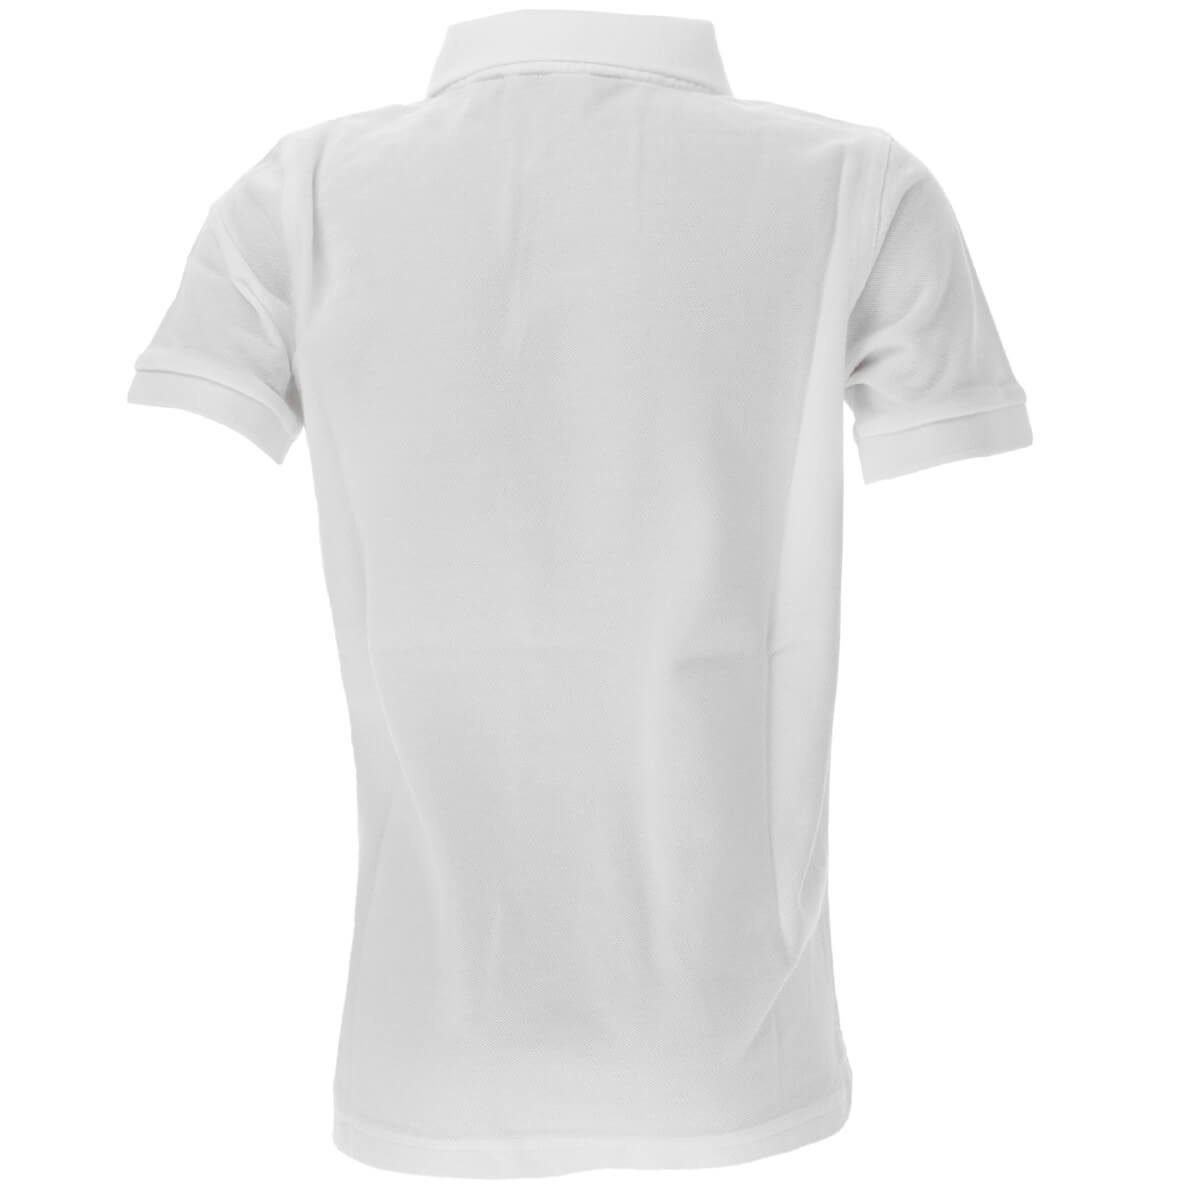 Poloshirt Baumwolle Original Kinder Gant Unisex Poloshirt Pique Weiß(110) 902201 aus